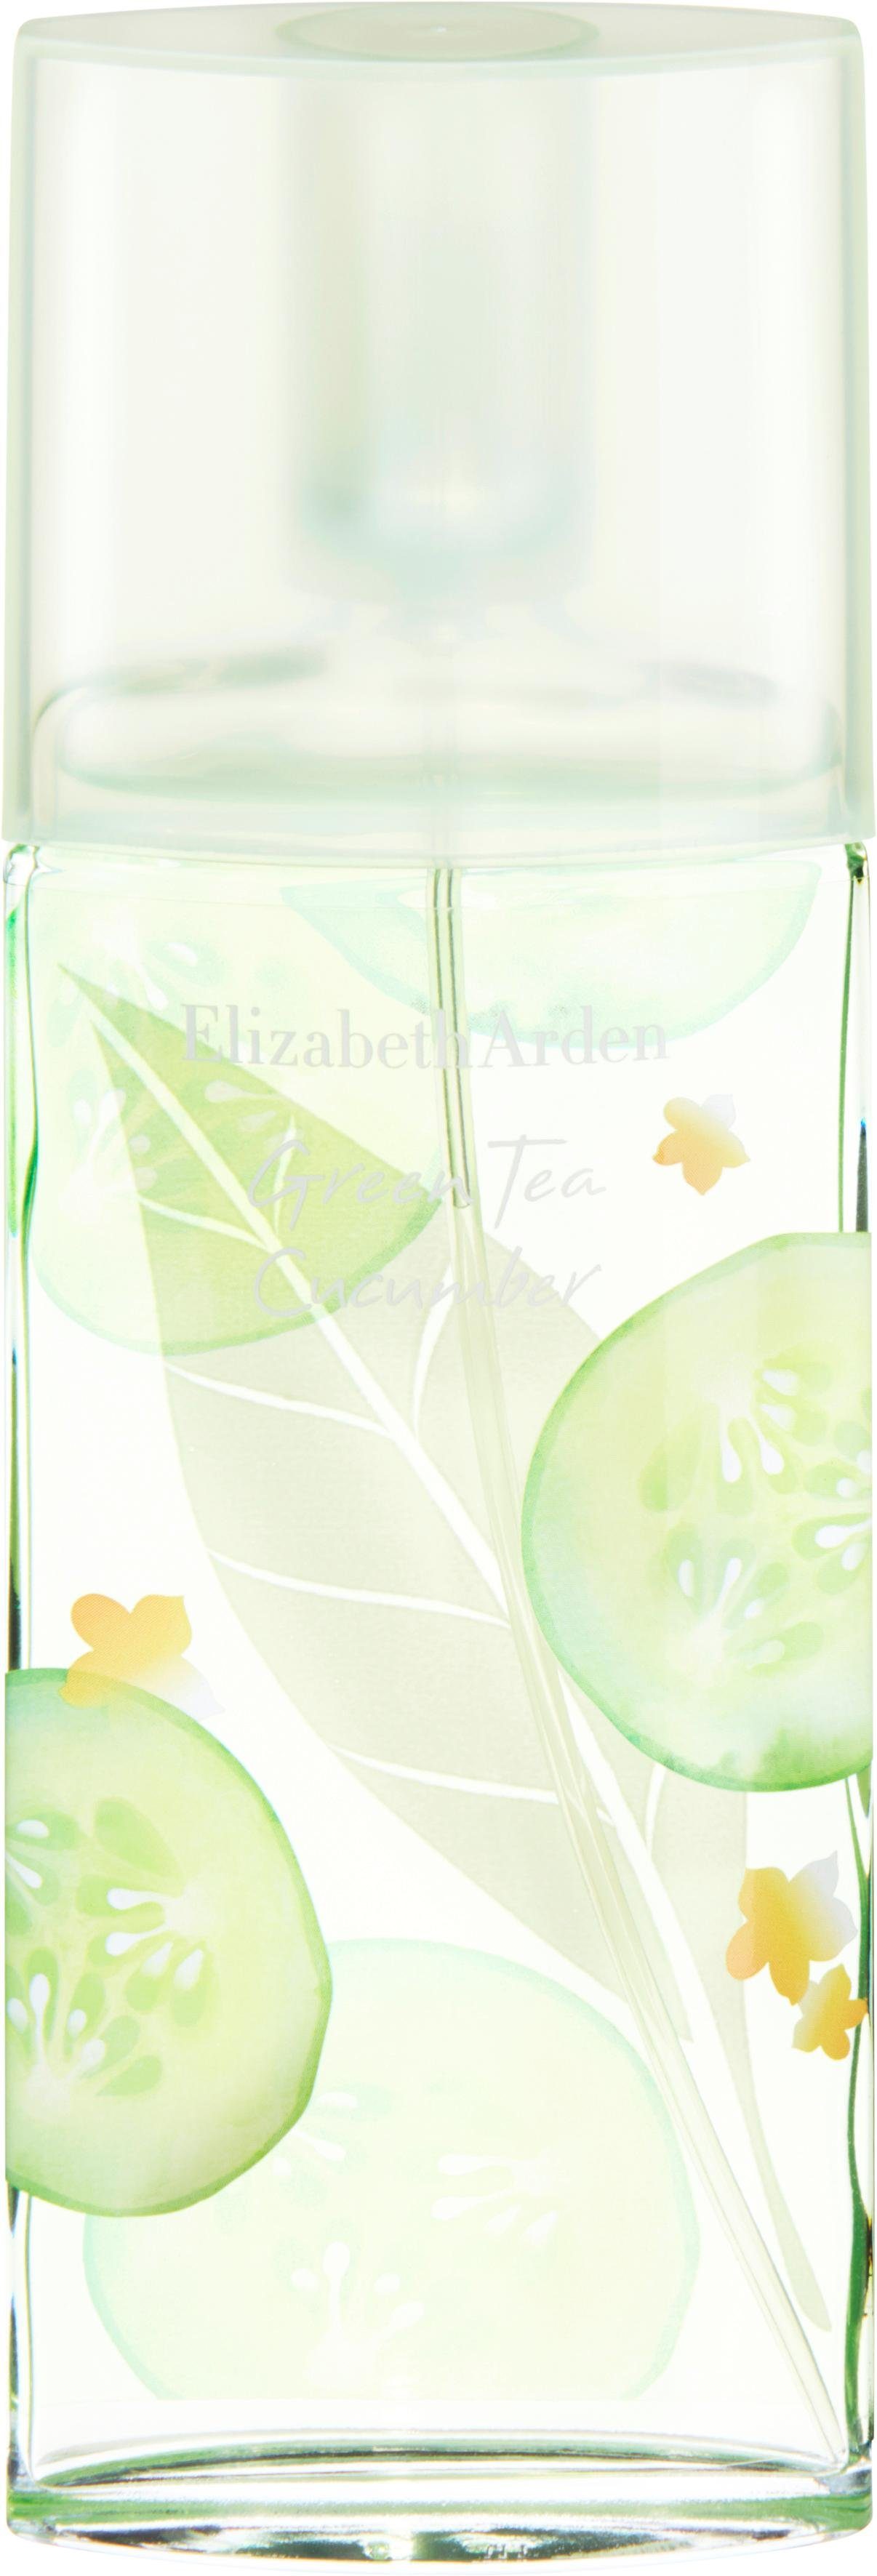 Elizabeth Arden Eau de Toilette Green Tea Cucumber